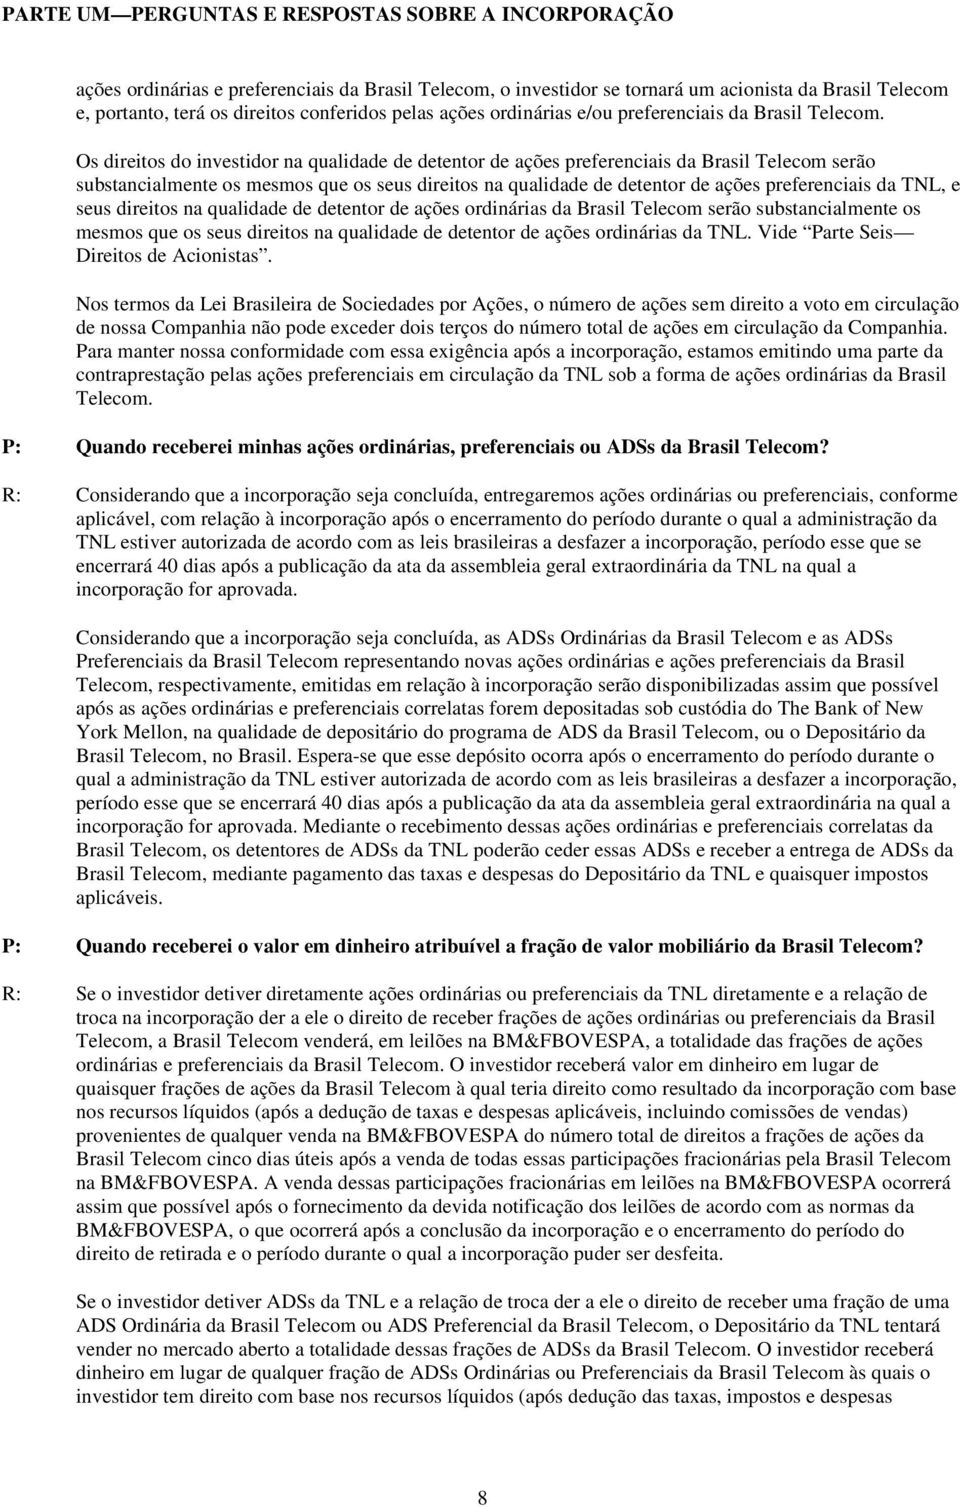 Os direitos do investidor na qualidade de detentor de ações preferenciais da Brasil Telecom serão substancialmente os mesmos que os seus direitos na qualidade de detentor de ações preferenciais da